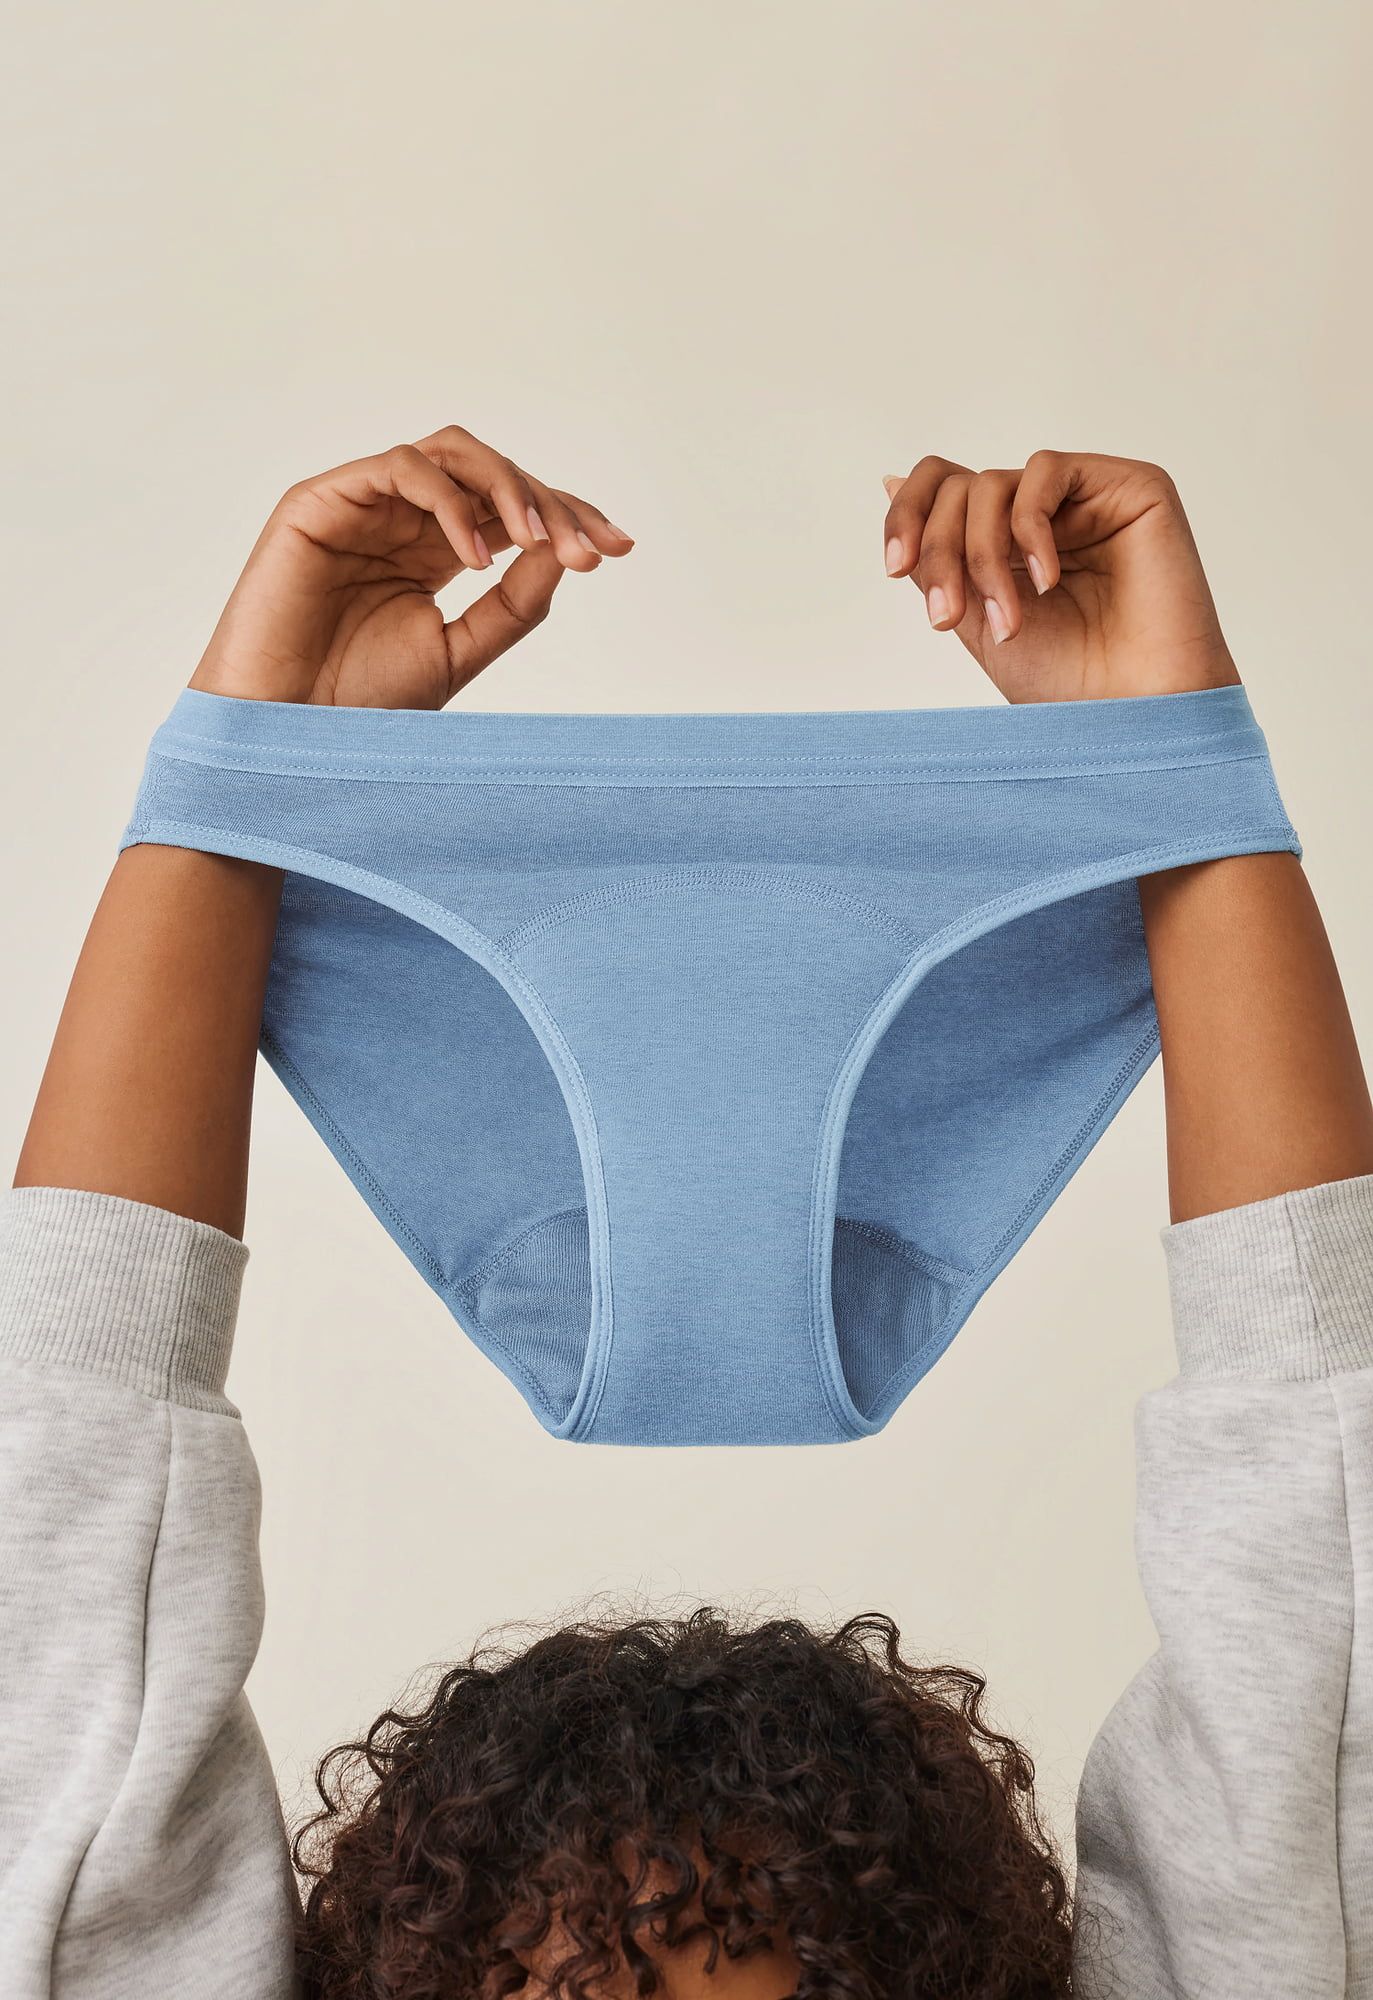 Imse Period Underwear Heavy Flow - Brown - Ecco Verde Online